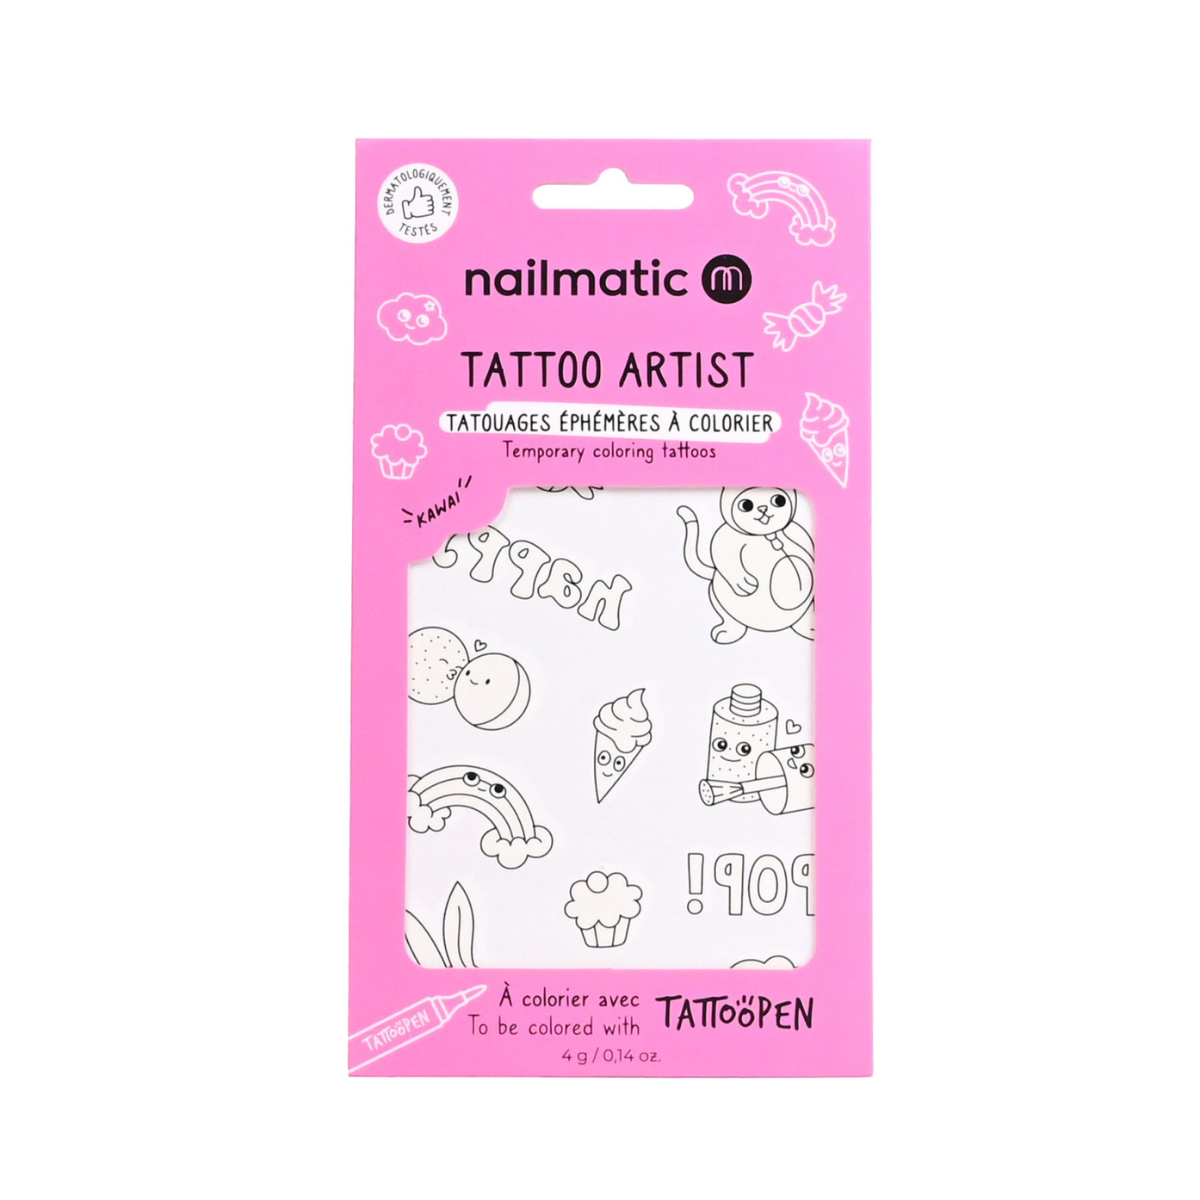 Nailmatic – Tattoo artist Kawai